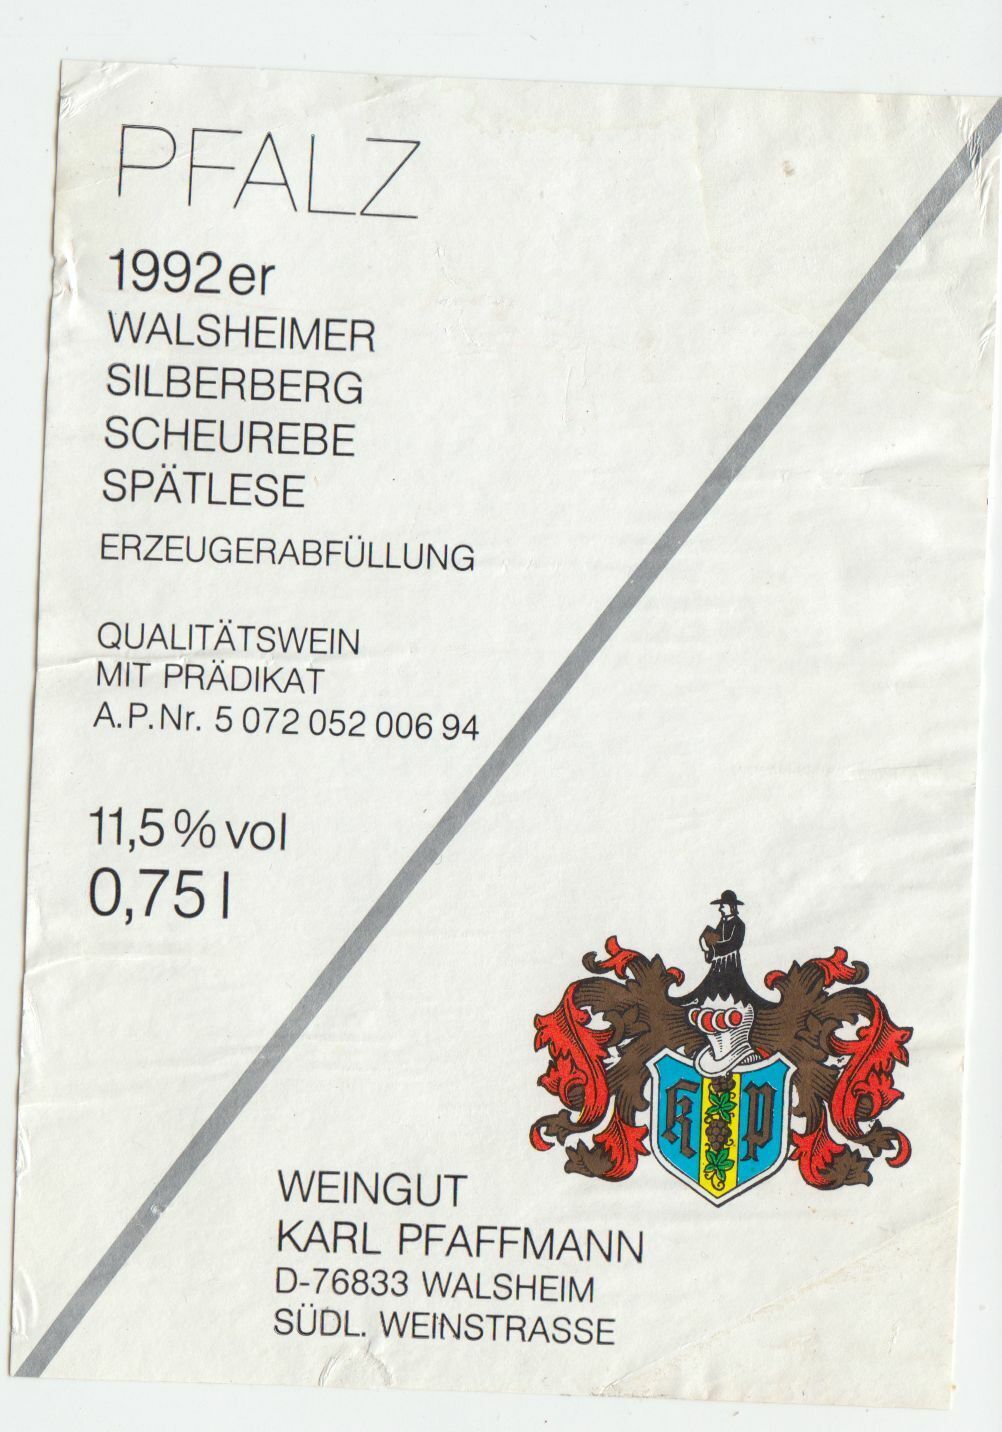 ETIQUETTE DE VIN 1992 PFALZ WALSHEIMER SILBERBERG SCHEUREBE SPATLESE 402553003175